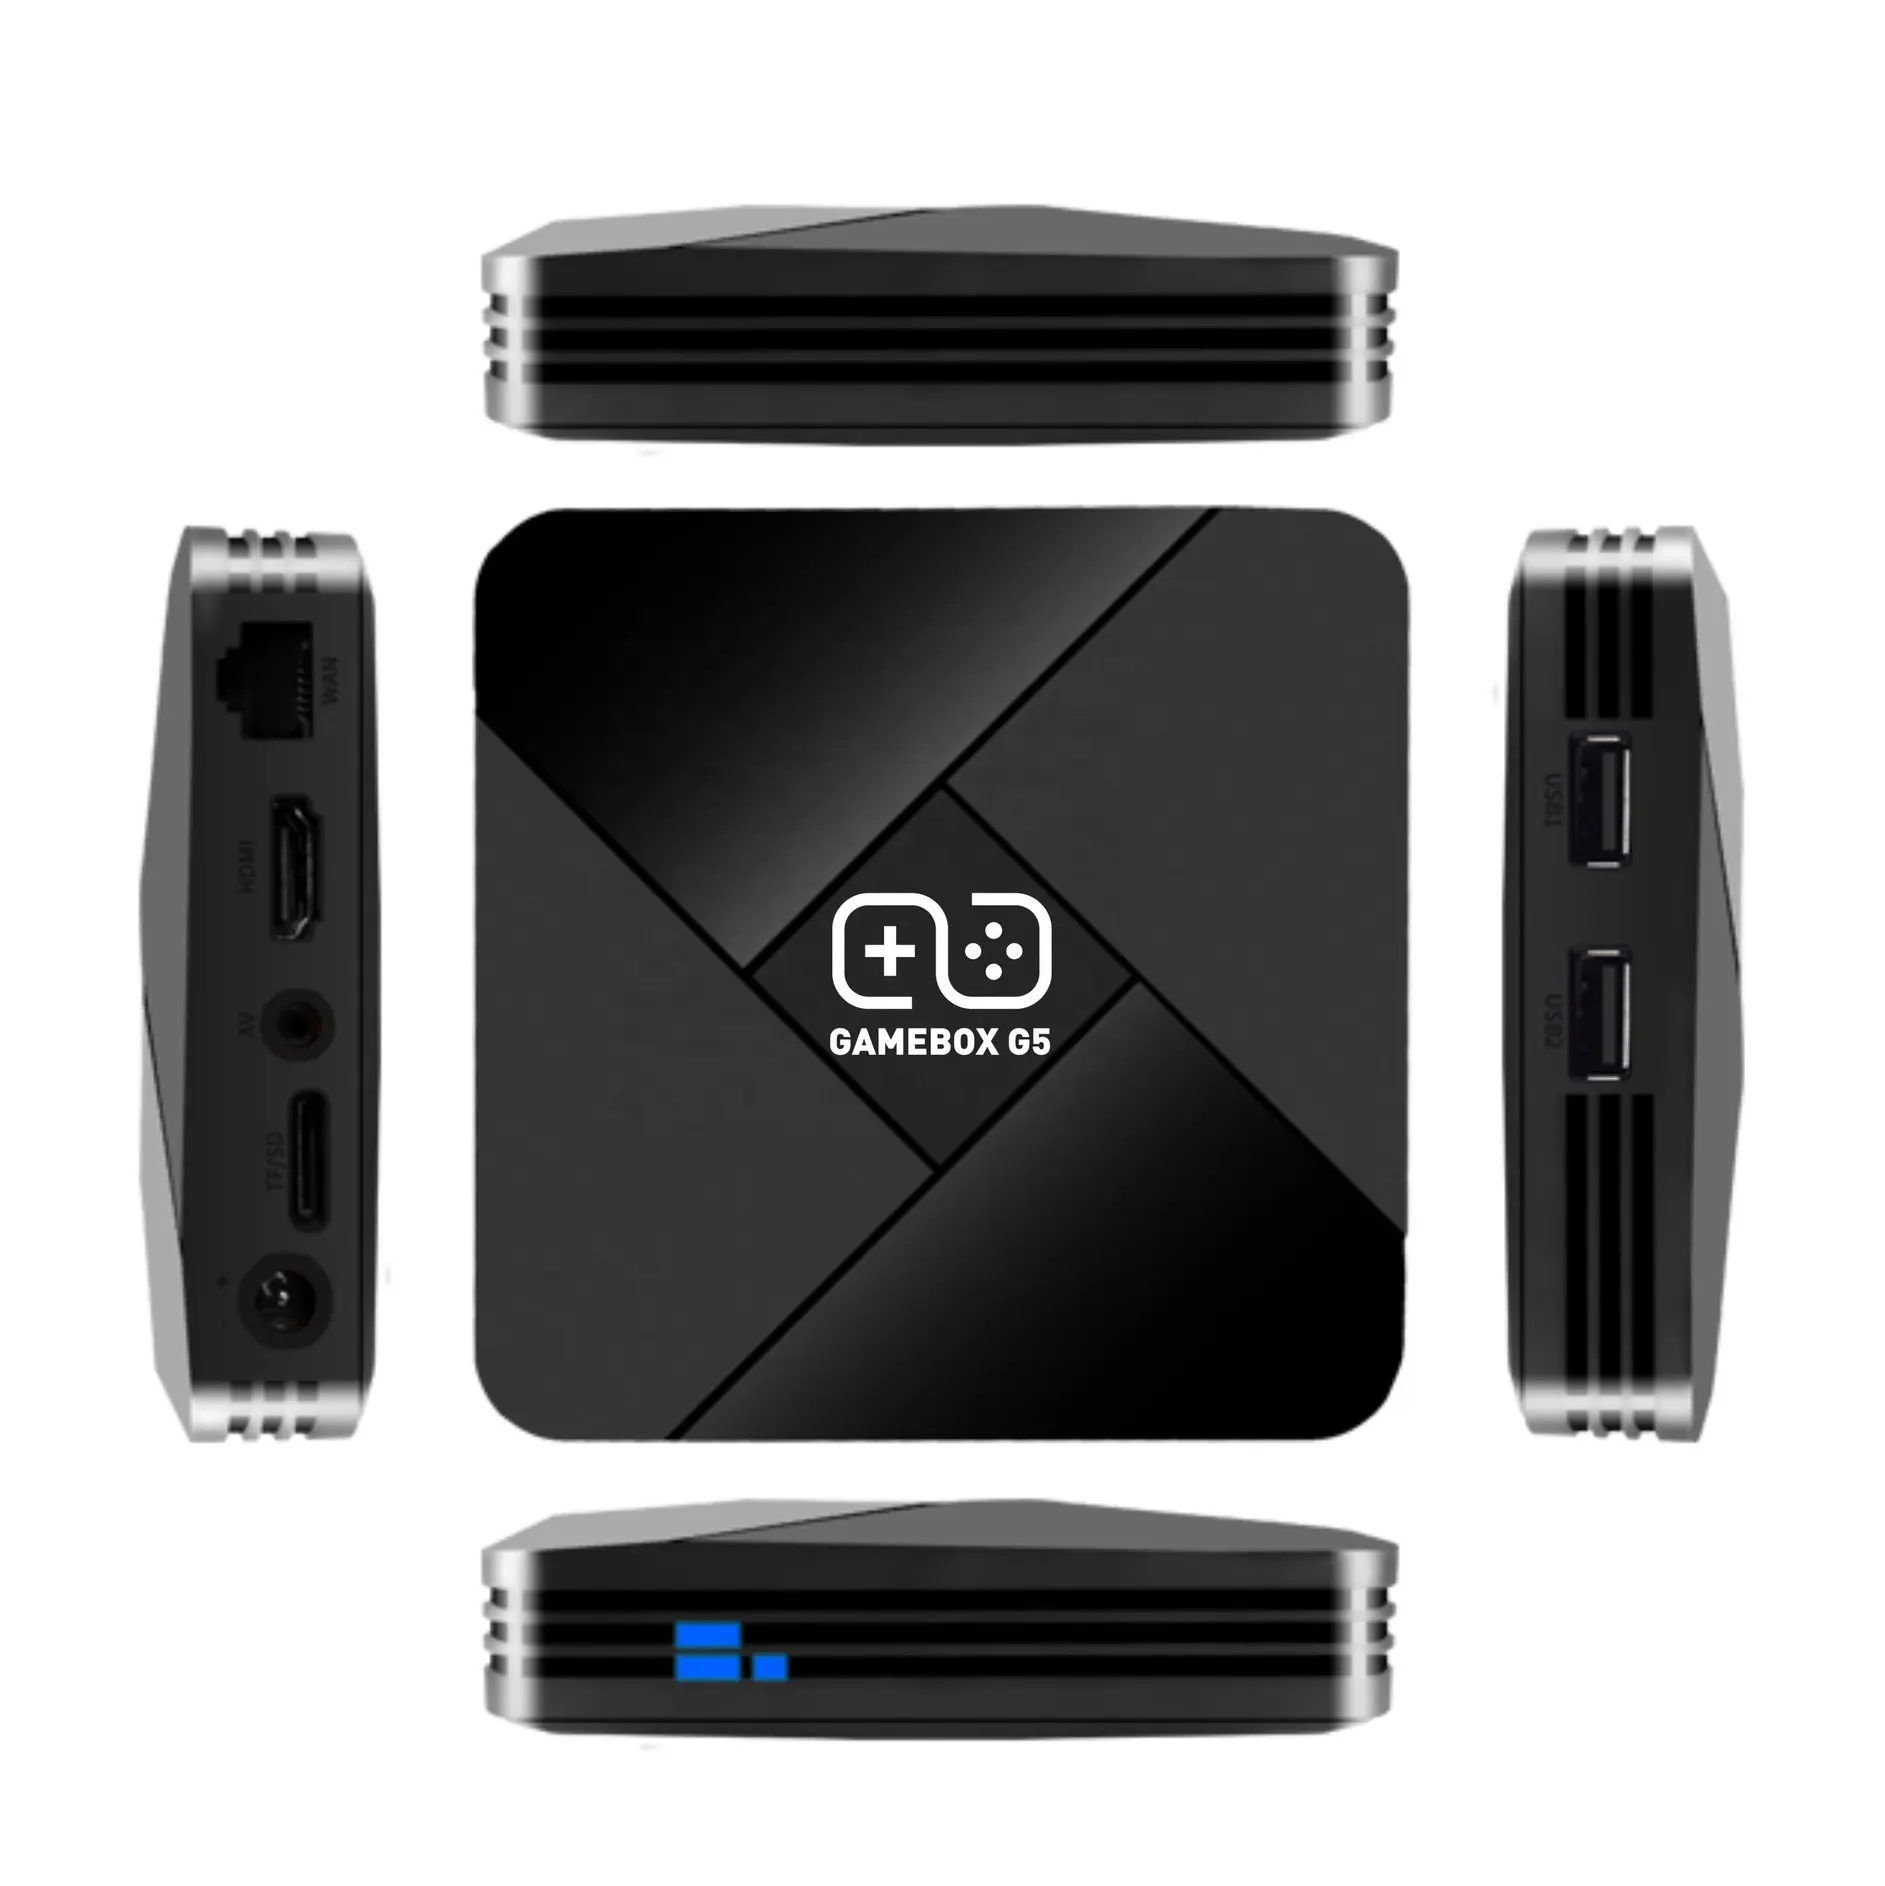 売れ筋多くのエミュレーターデュアルシステムAndroidTVゲームボックス4K H-D TV3DビデオゲームコンソールG5ゲームボックス10000ゲーム